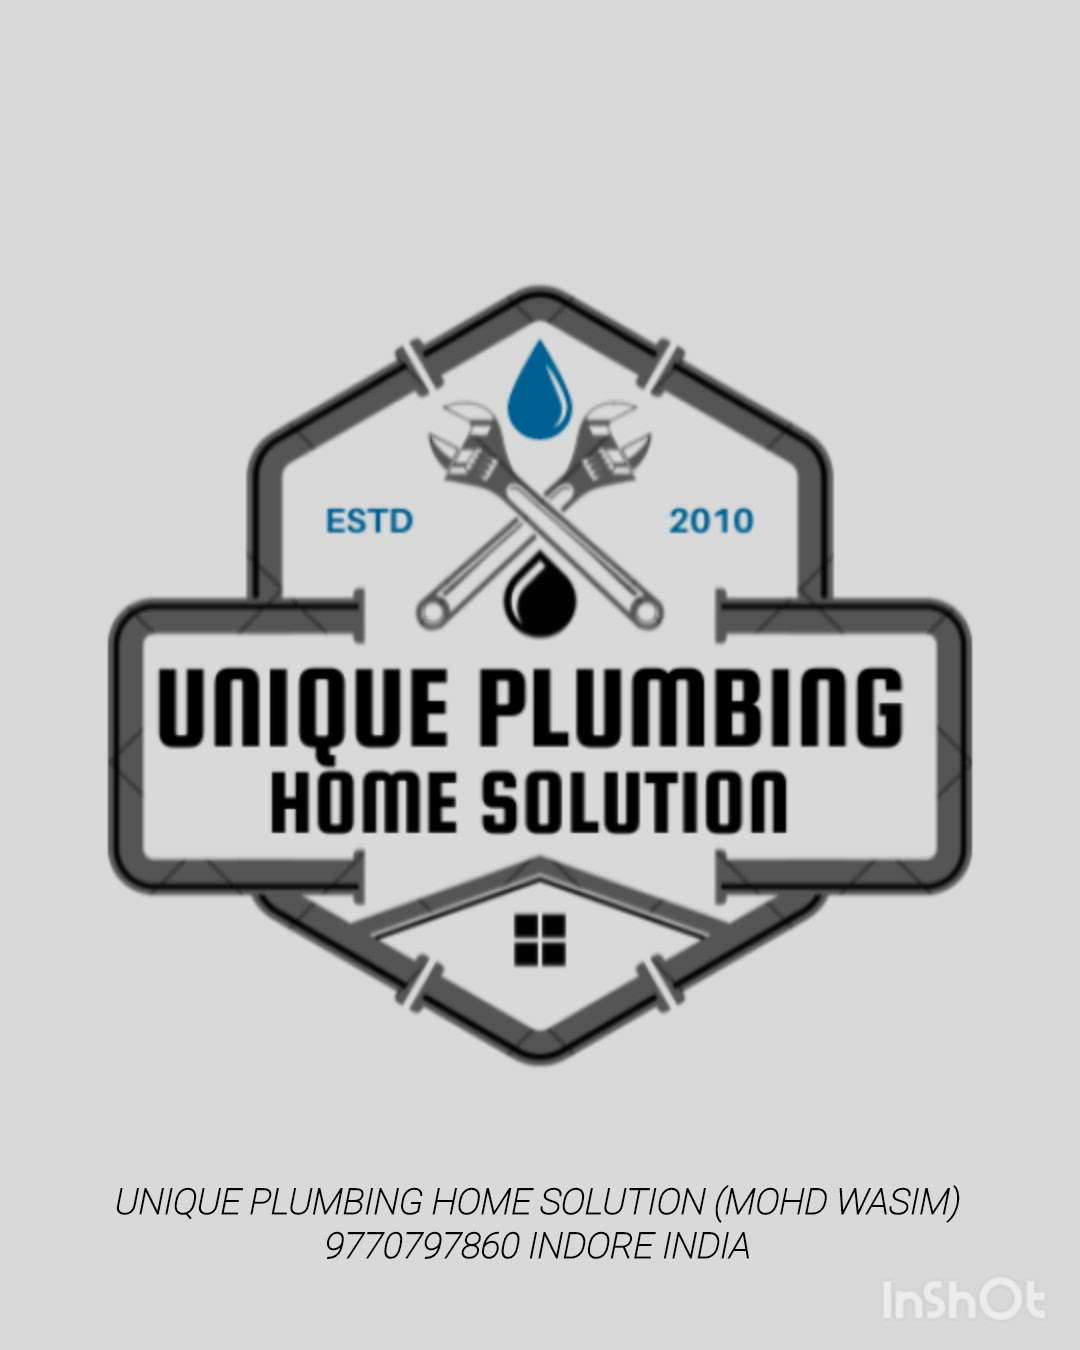 Unique Plumbing Home Solution
Indore India  #Plumber #Plumbing #WaterProofings